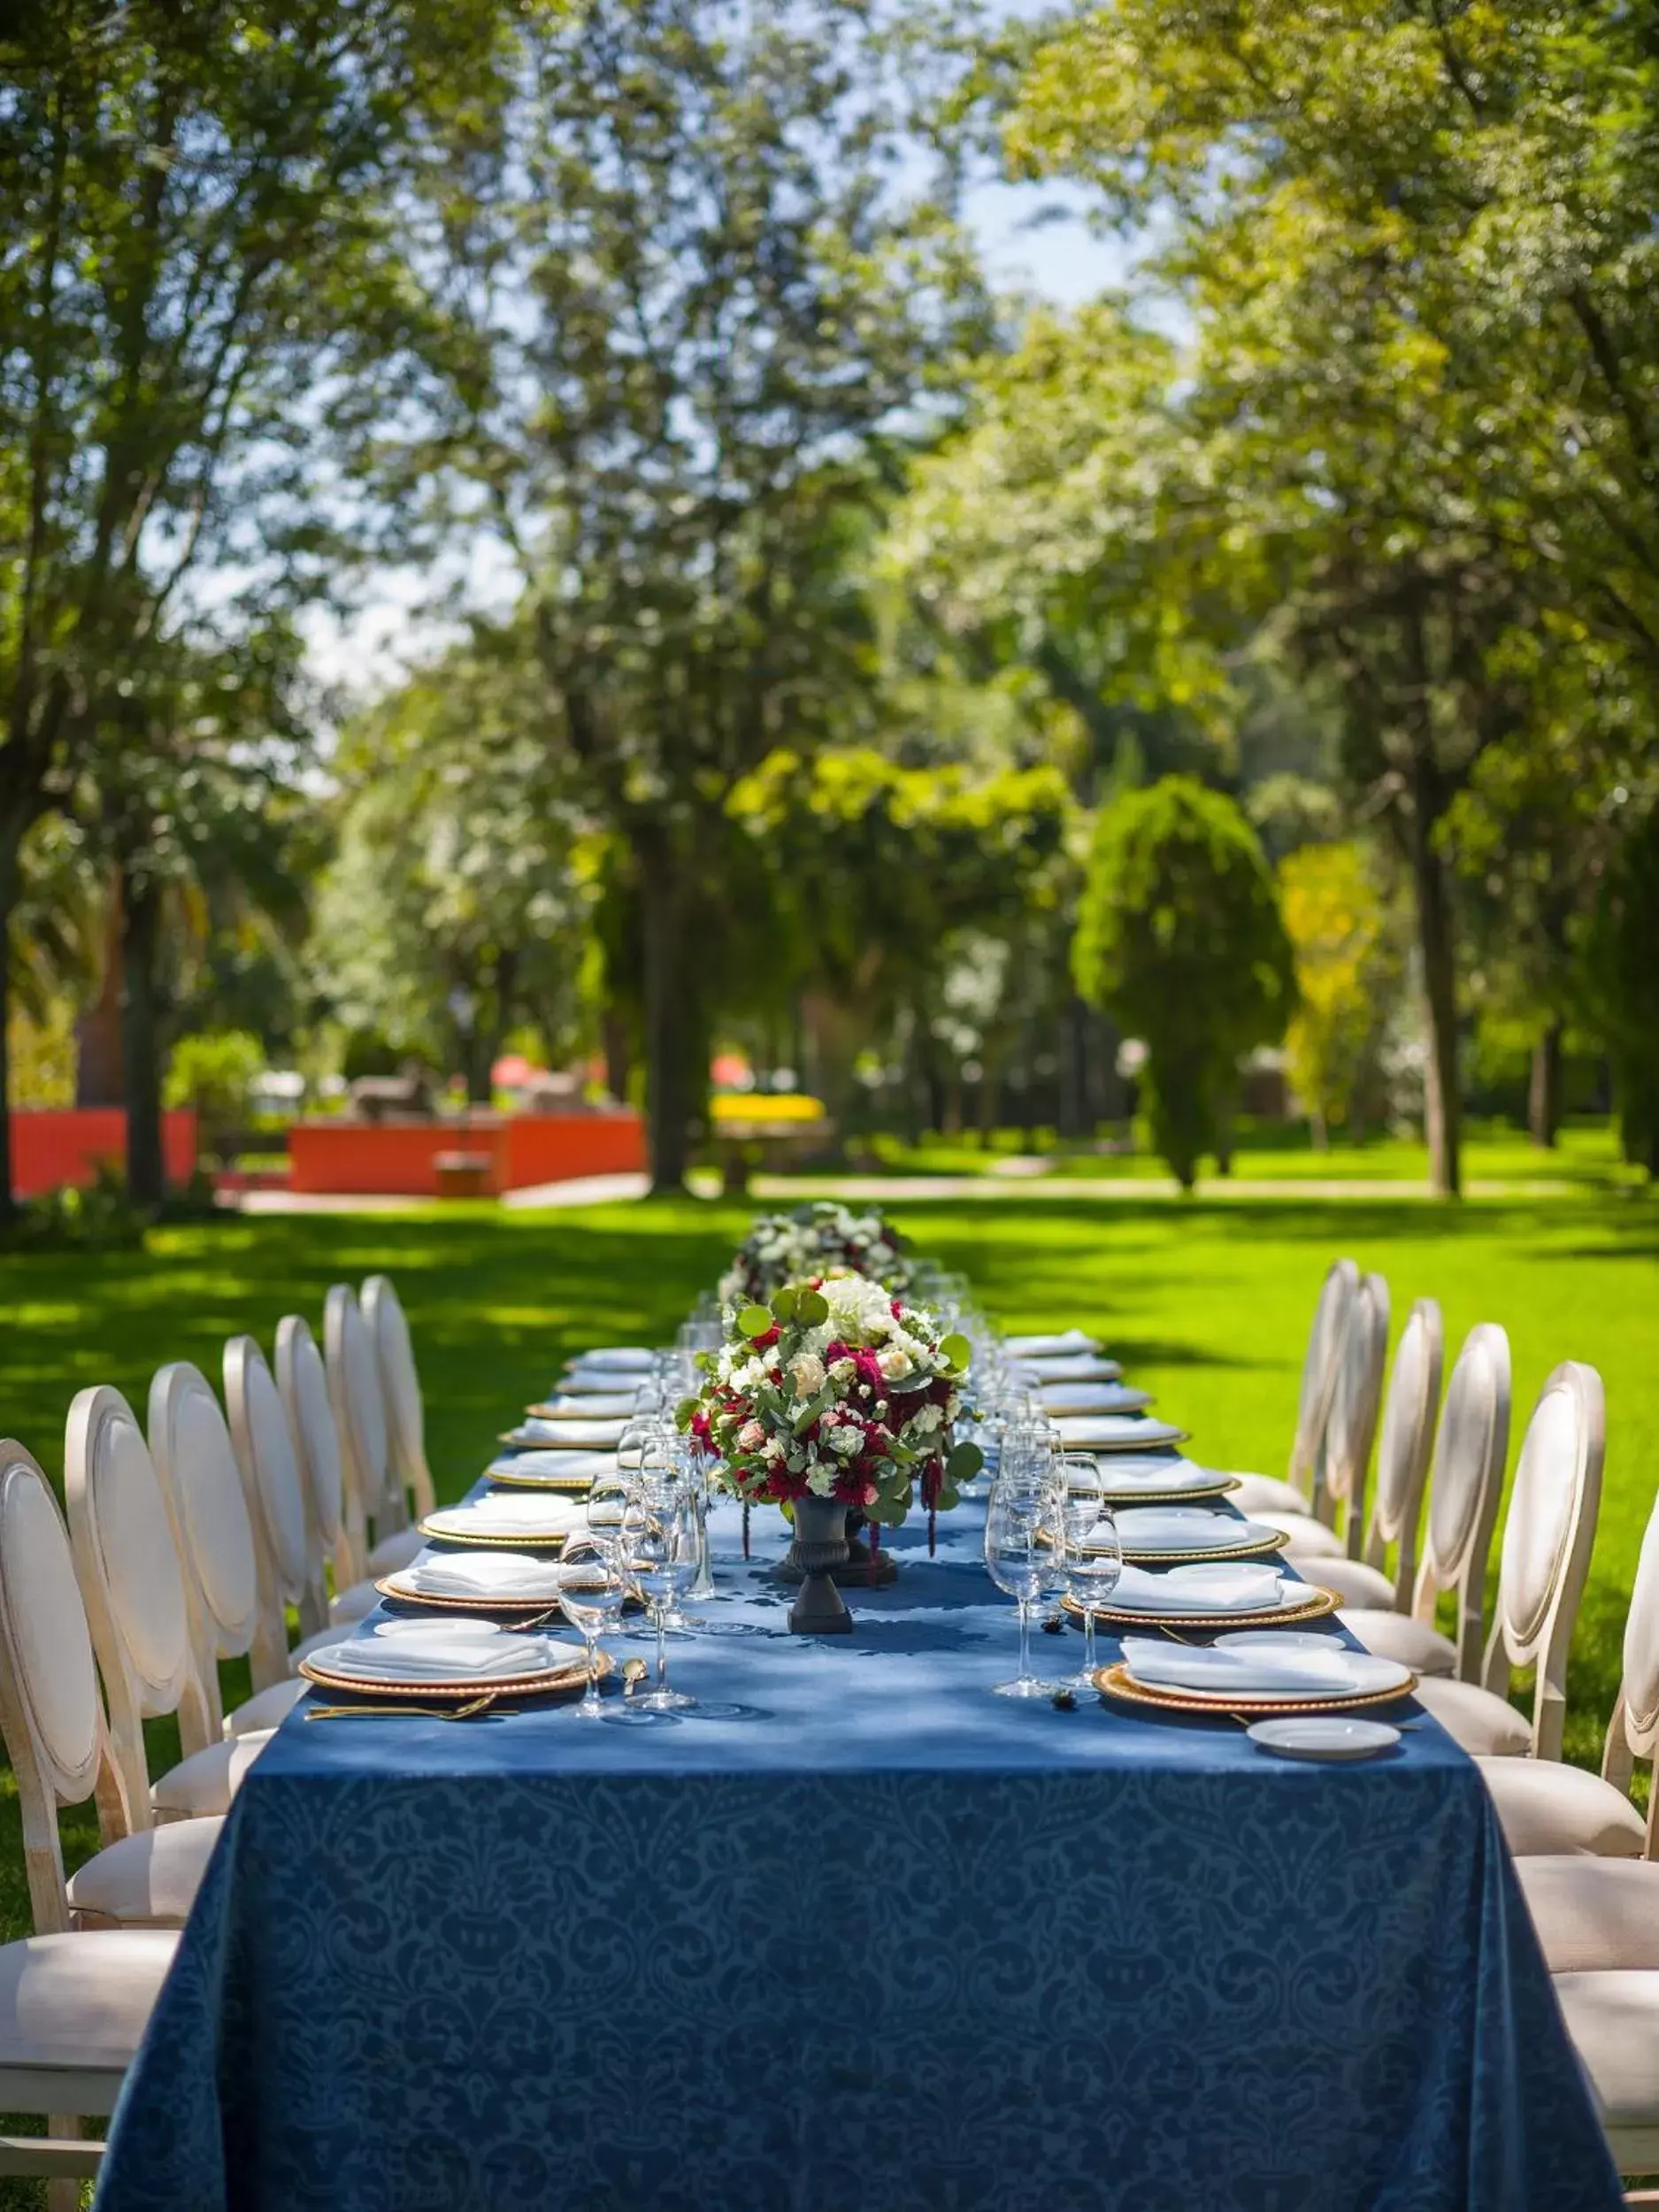 Banquet/Function facilities, Banquet Facilities in Fiesta Americana Hacienda Galindo Resort & Spa